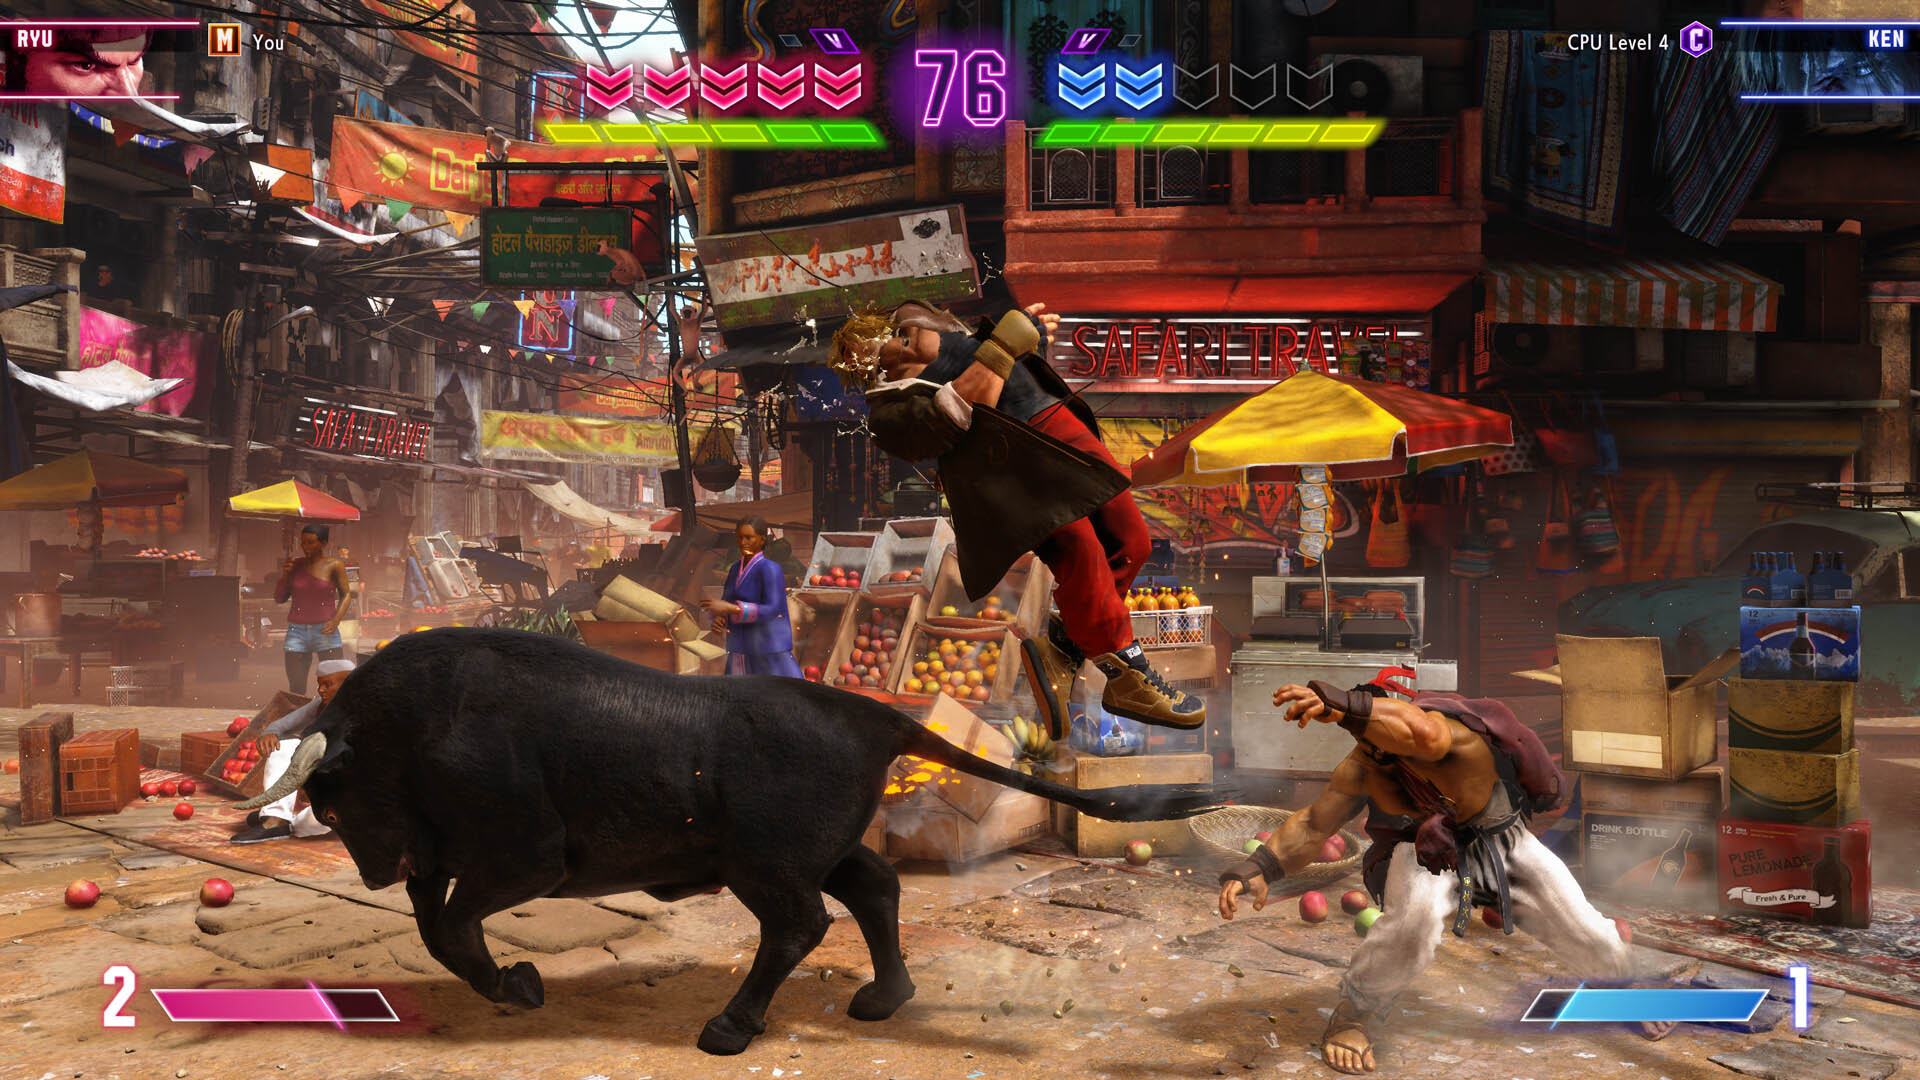 格斗游戏《街头霸王6》在Steam上创历史新高  同时在线游戏数超70000！